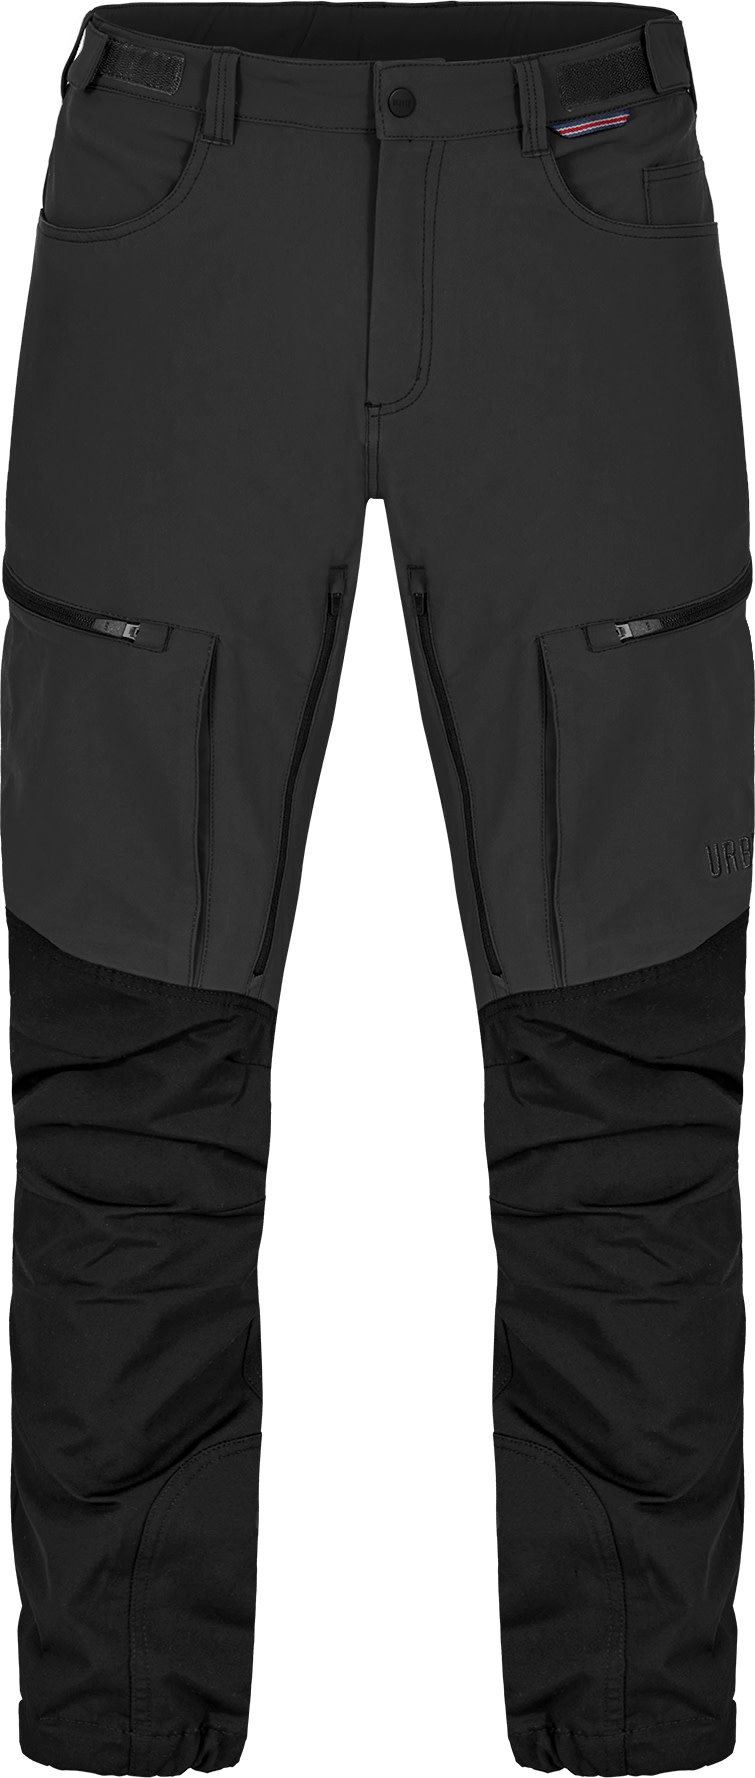 Winter Men Outdoor Hiking Pants Fleece Warm Quick-drying Softshell Trousers  Camping Climbing Skiing Trekking Fishing Waterproof Casual Pants | Wish